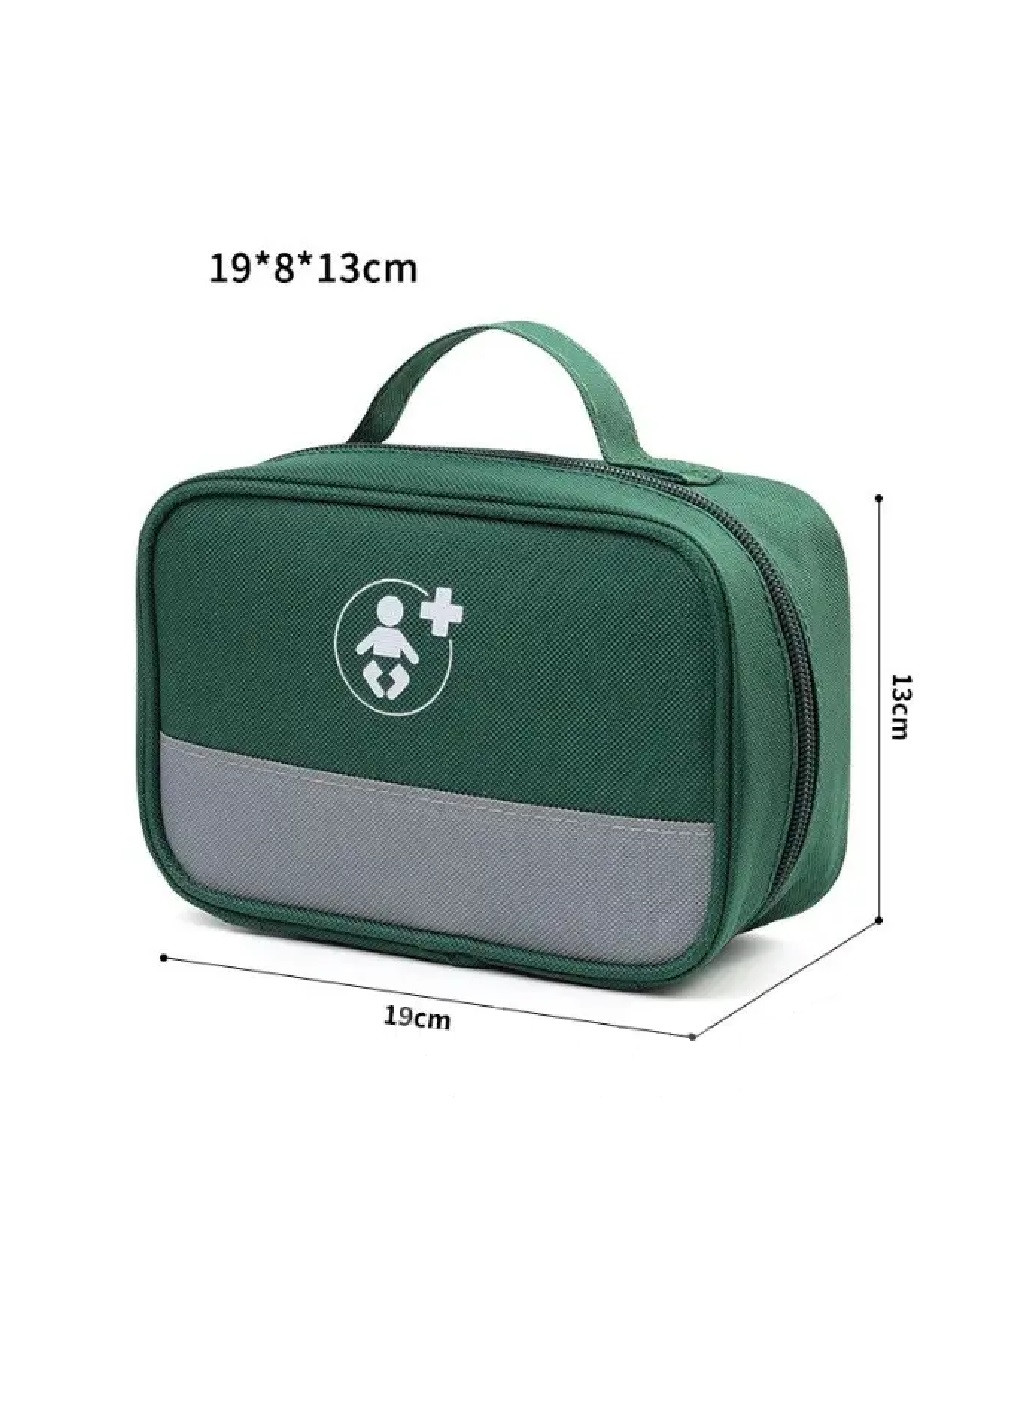 Аптечка сумка органайзер компактная портативная для медикаментов путешествий дома 19х8х13 см (474869-Prob) Зеленая Unbranded (260044558)